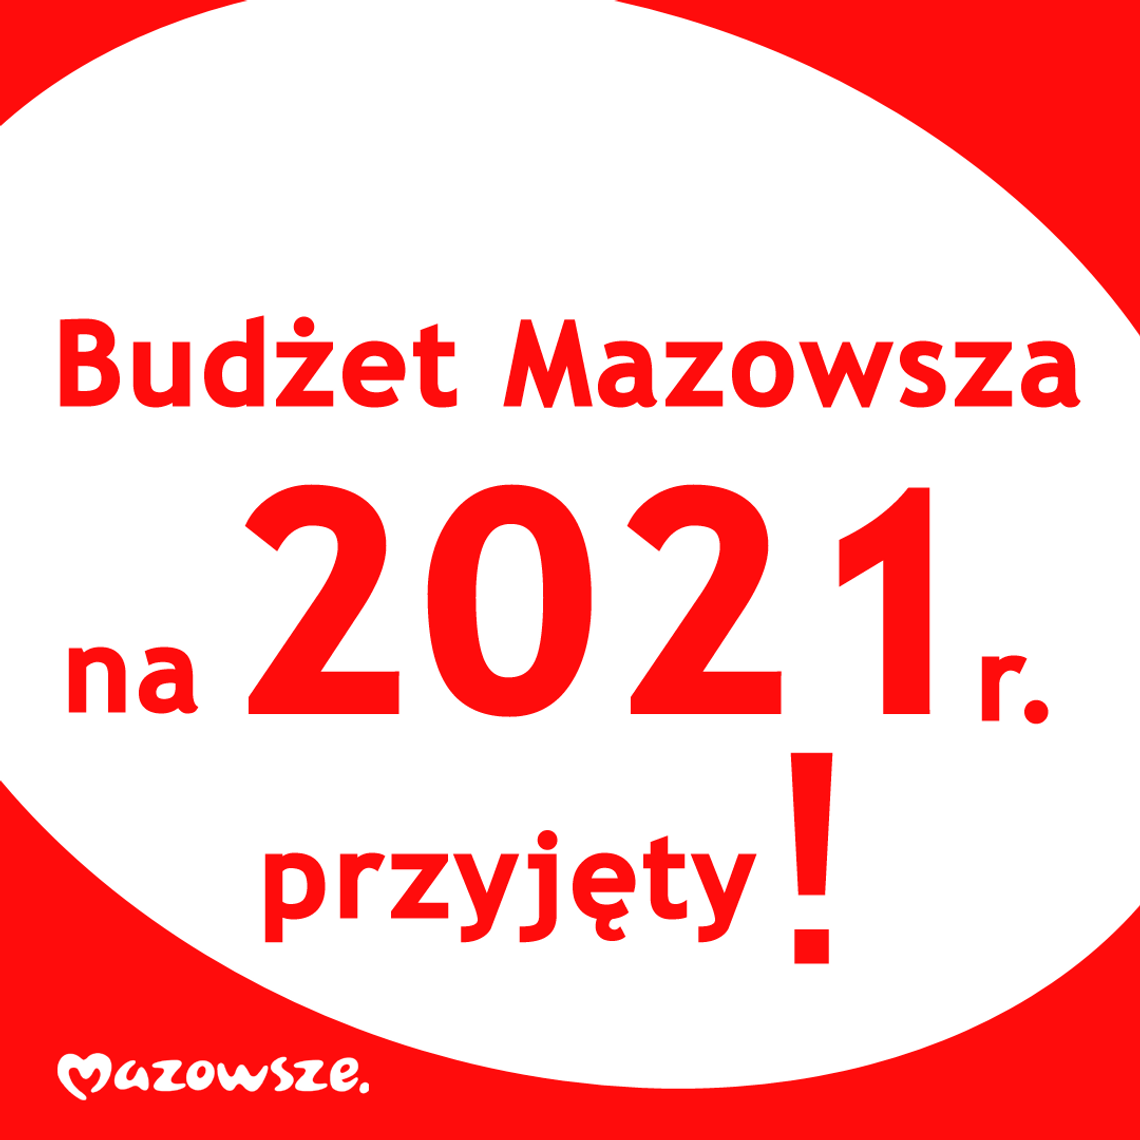 Rekordowy budżet Mazowsza na 2021 rok - 7 Dni na Mazowszu